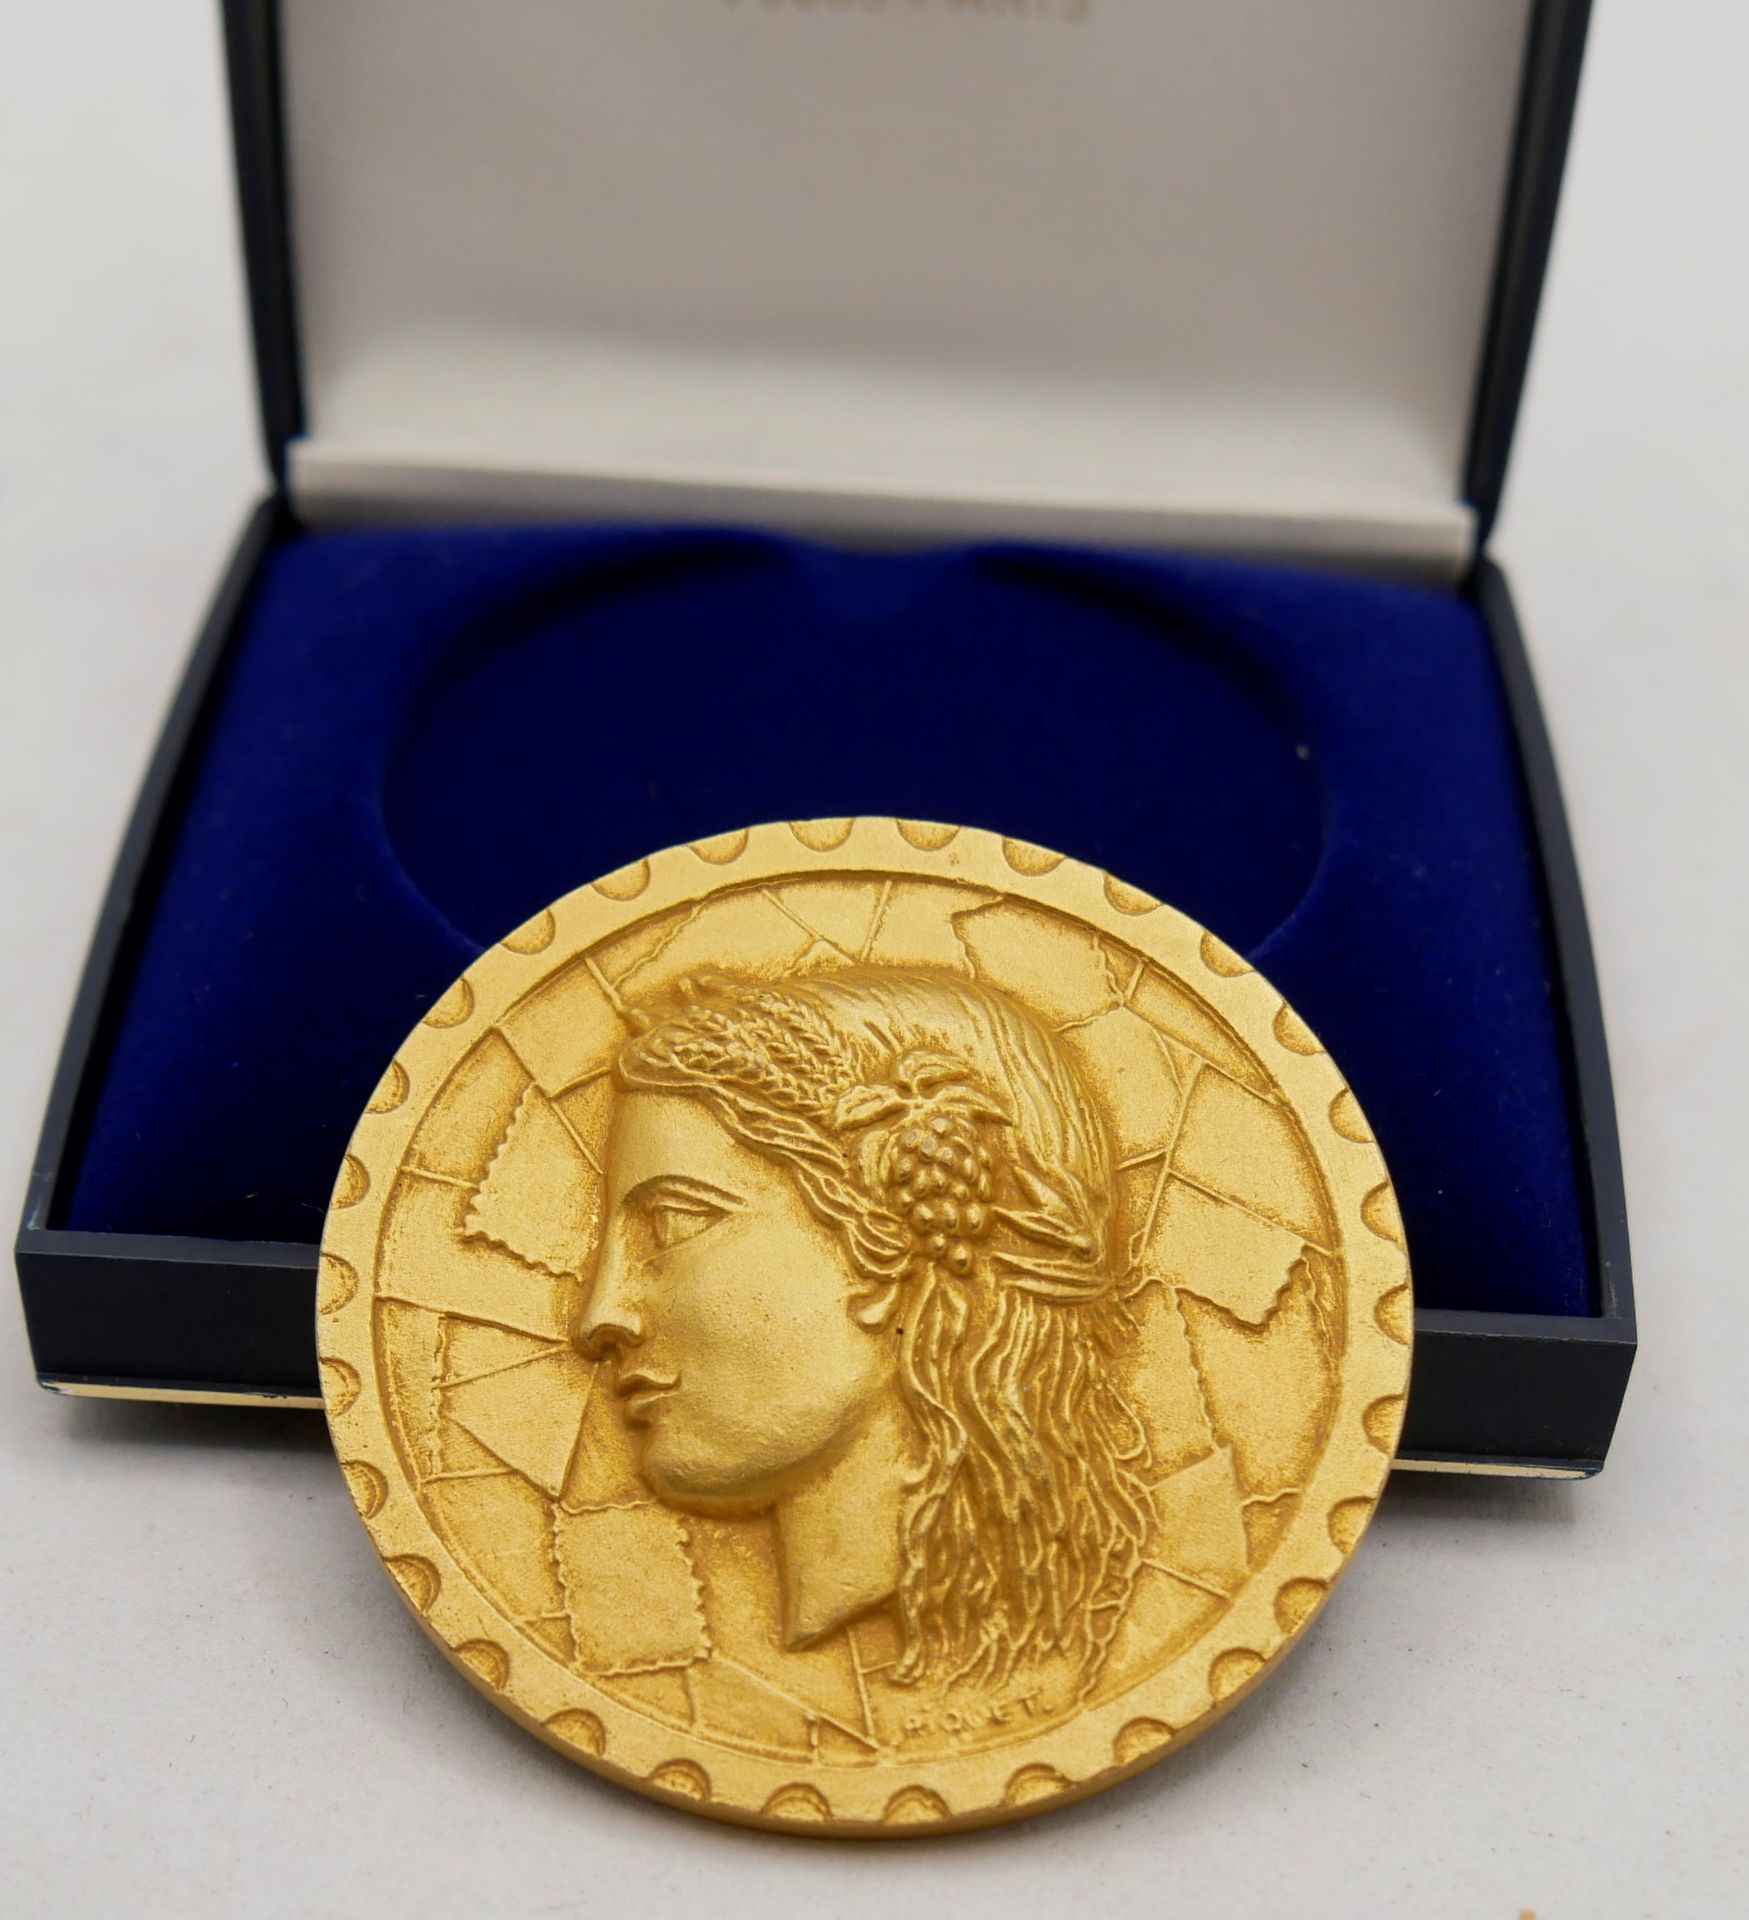 1 Medaille von Riquet Freres Paris für 90 ANS A.P.S. Epernay, 17 Avril 1988 Congress III, Region - Bild 4 aus 4